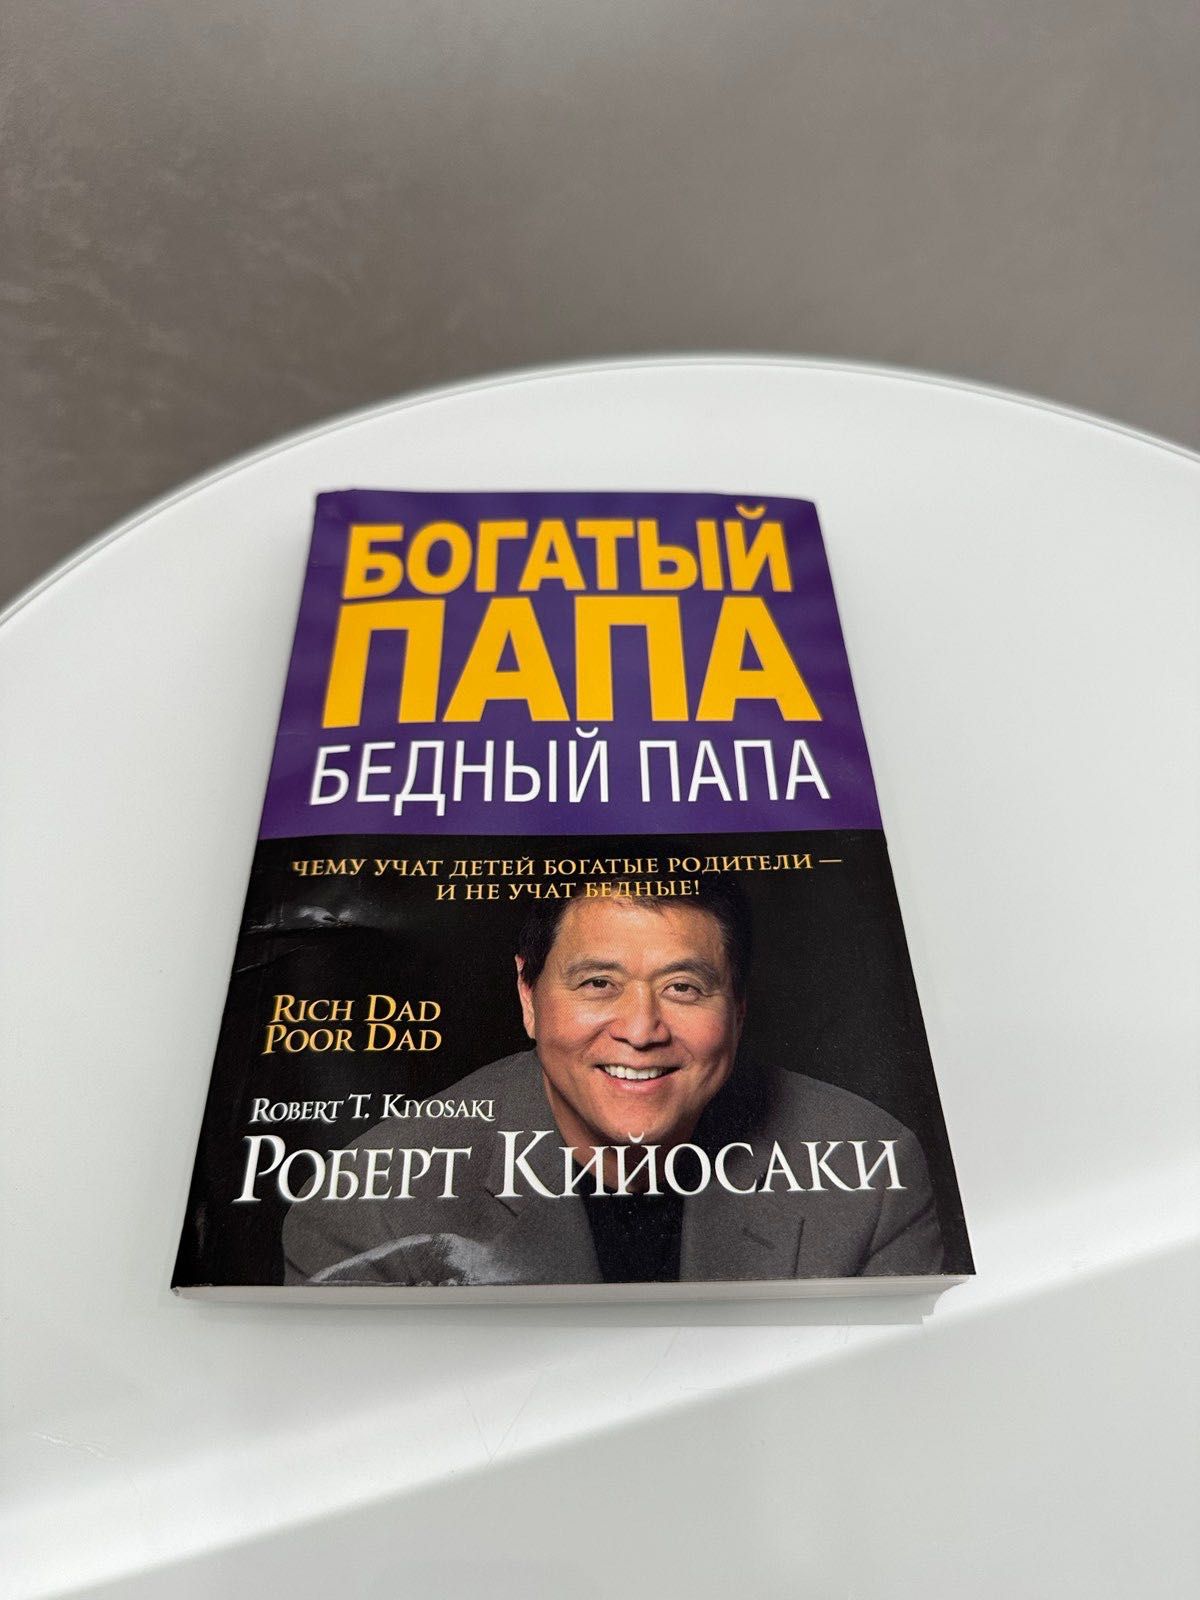 Книга "Богатый папа, бедный папа" Роберт Кийосаки